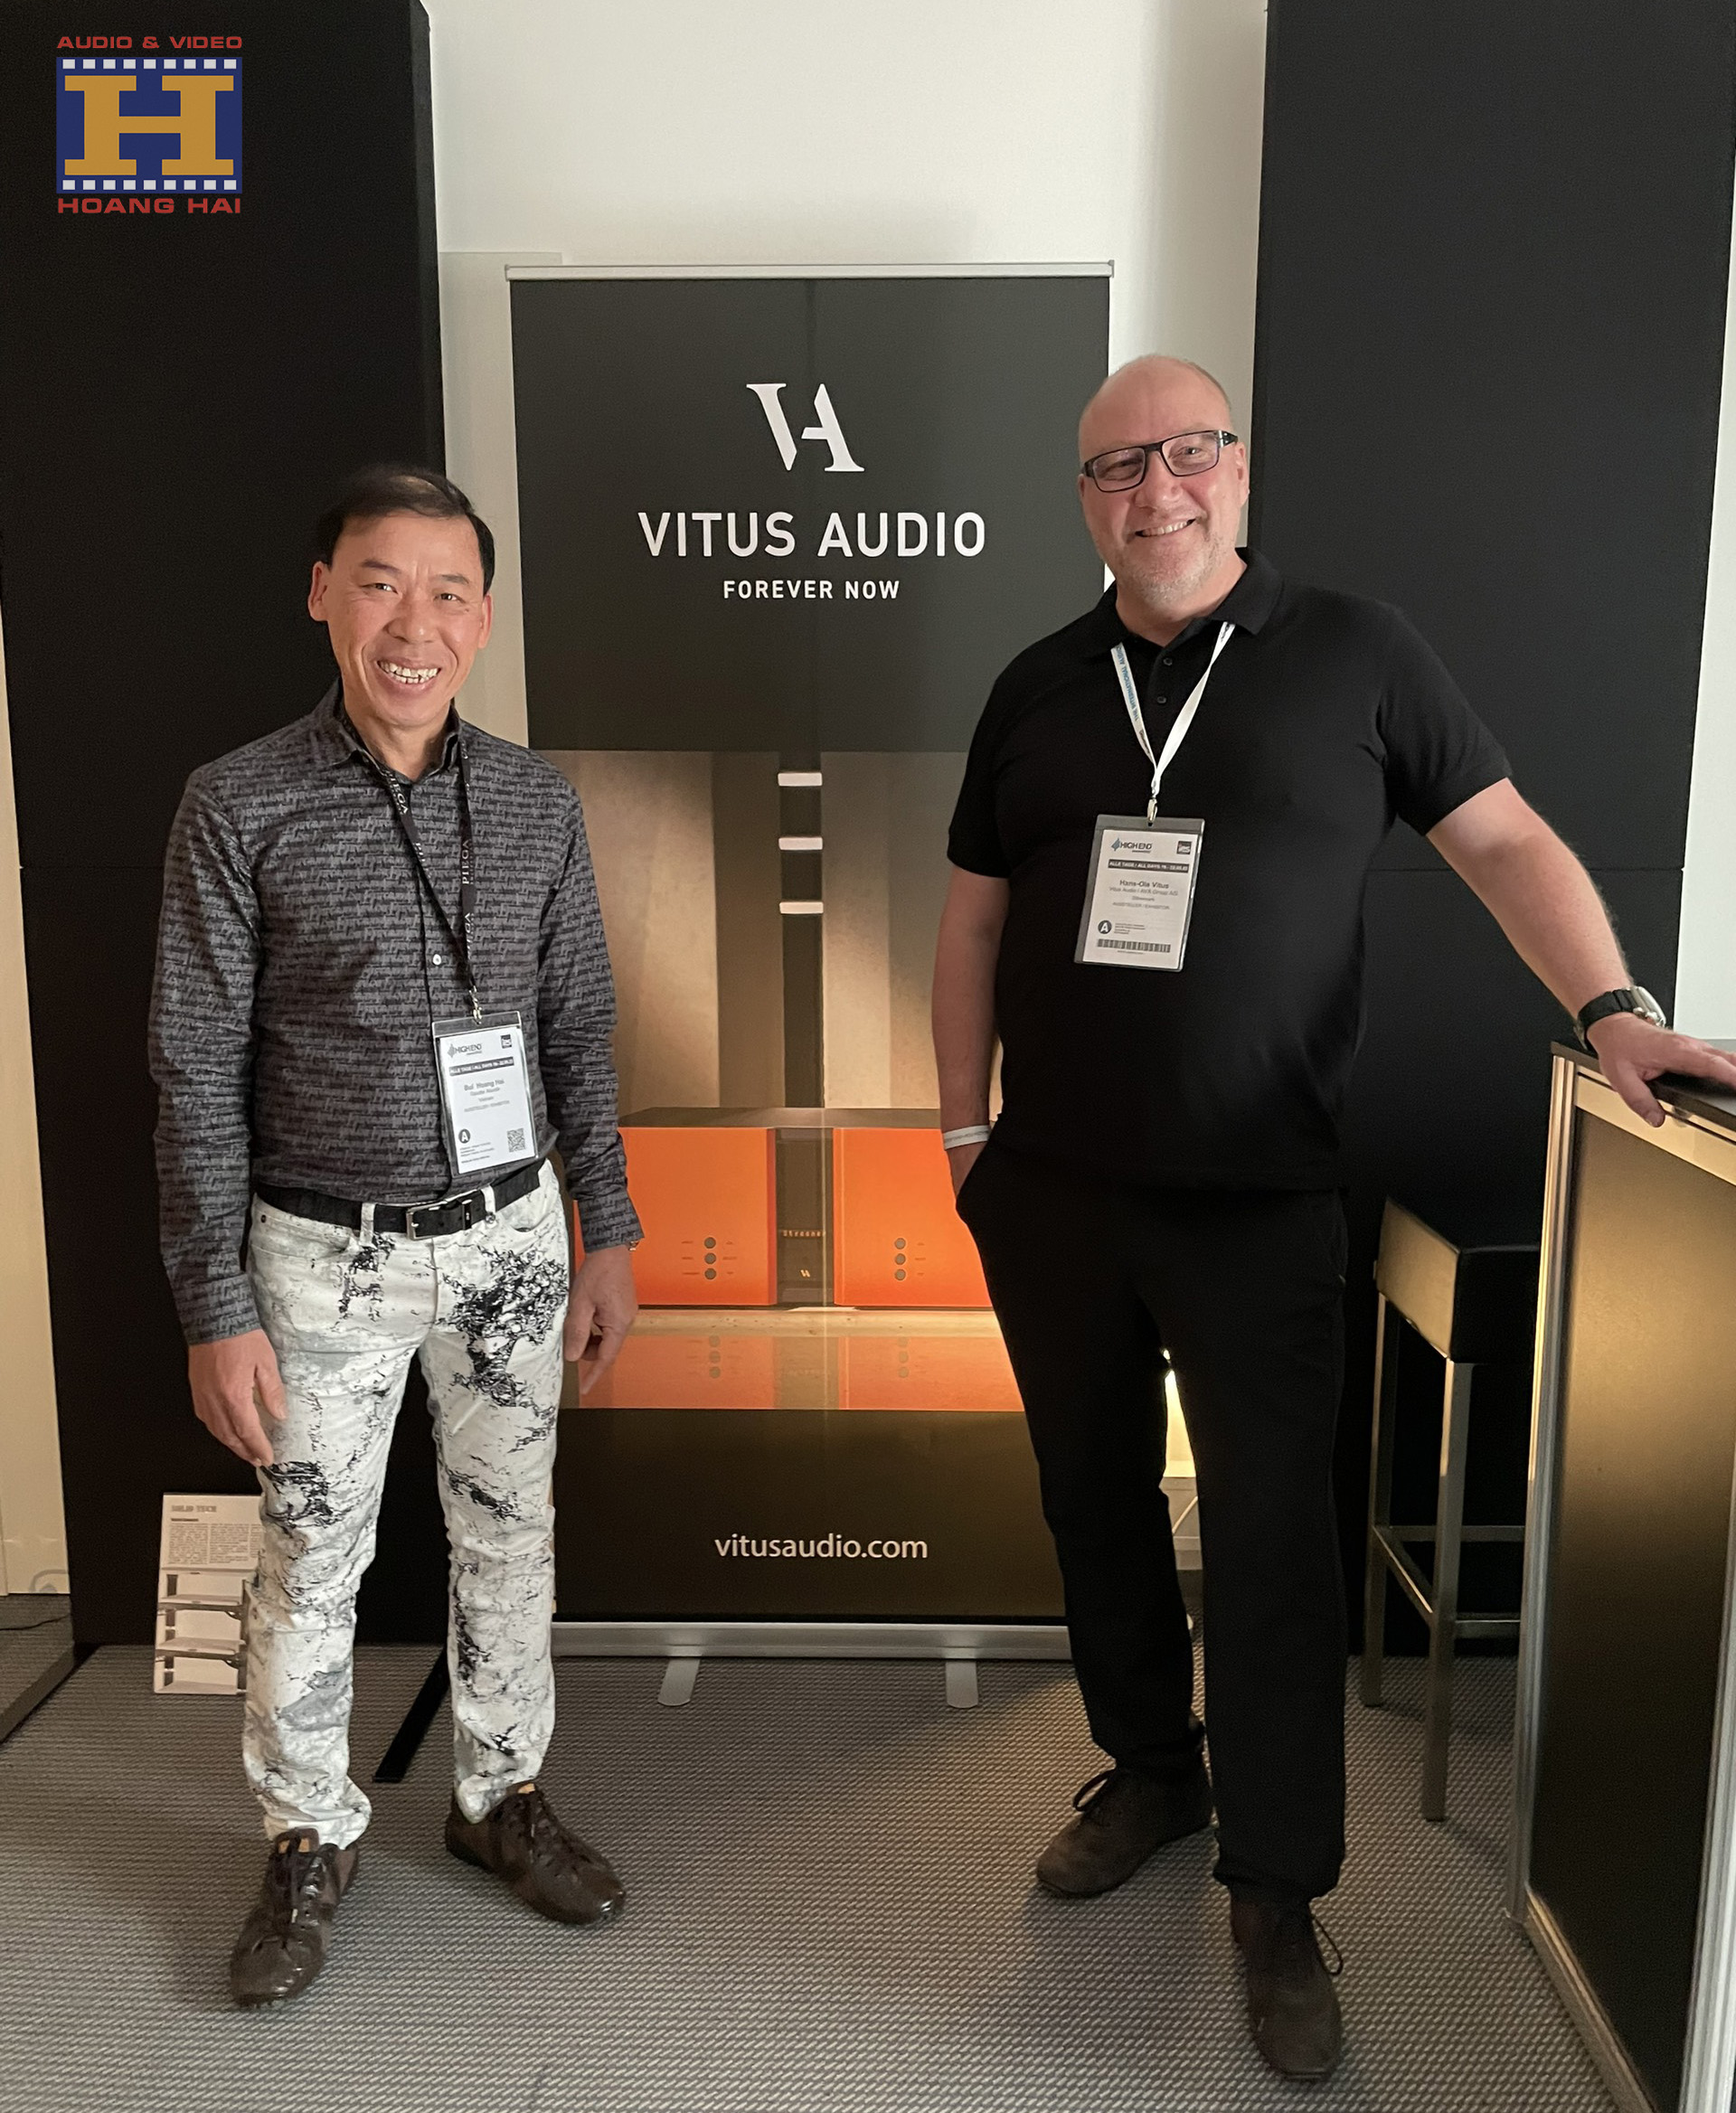 Giám đốc Bùi Hoàng Hải tại khu vực trình diễn của Vitus Audio